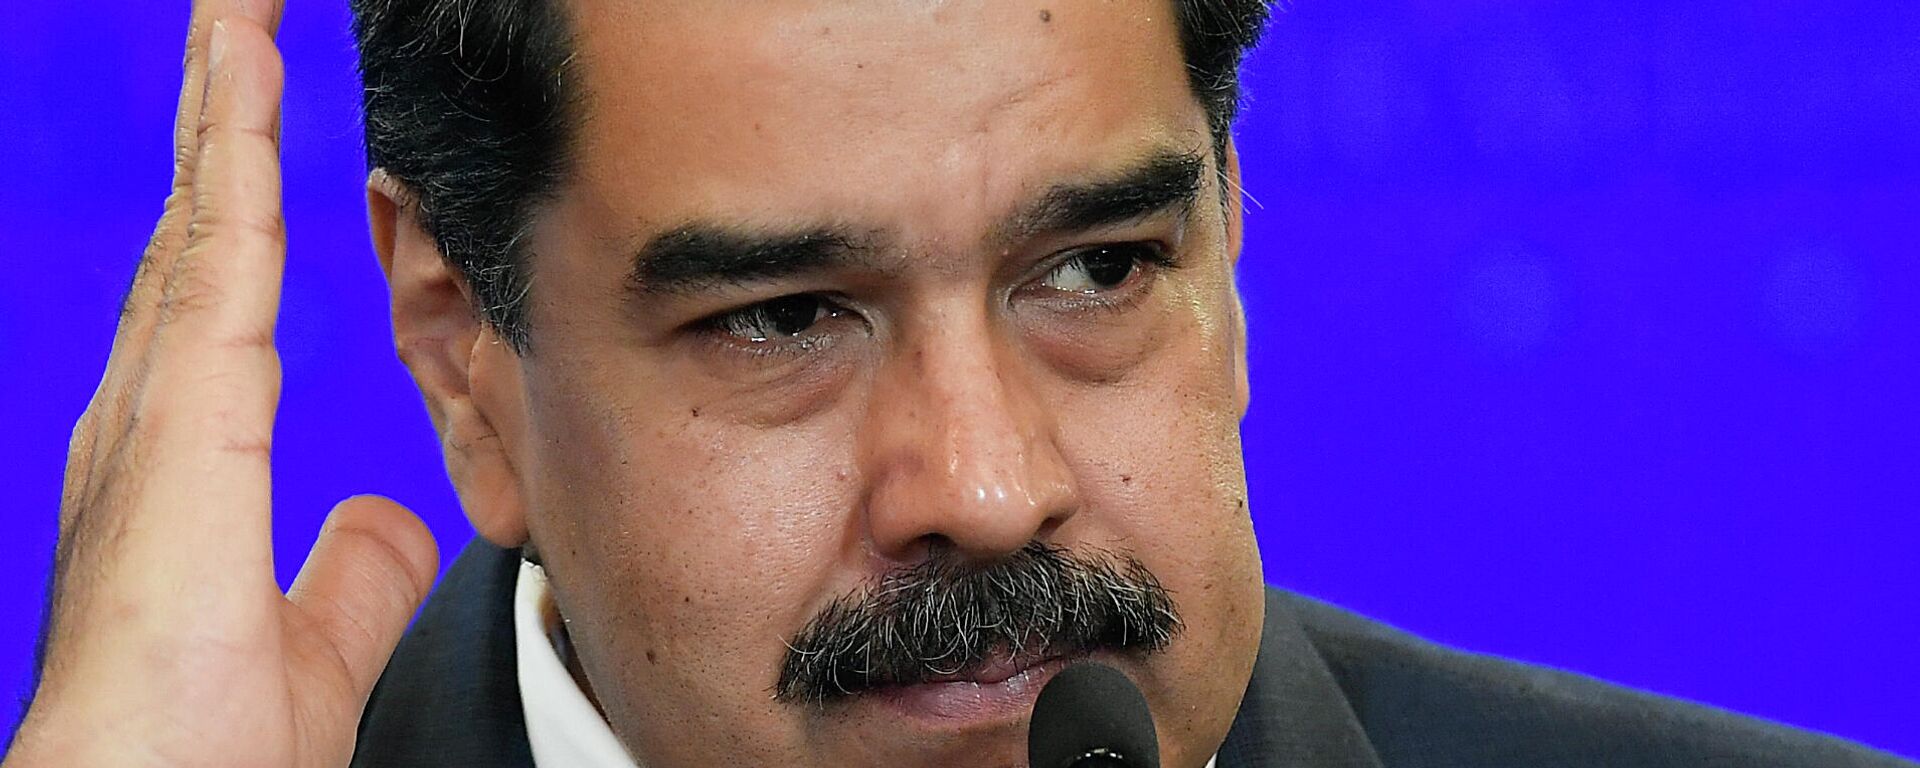 Nicolás Maduro, presidente de Venezuela - Sputnik Mundo, 1920, 06.06.2021